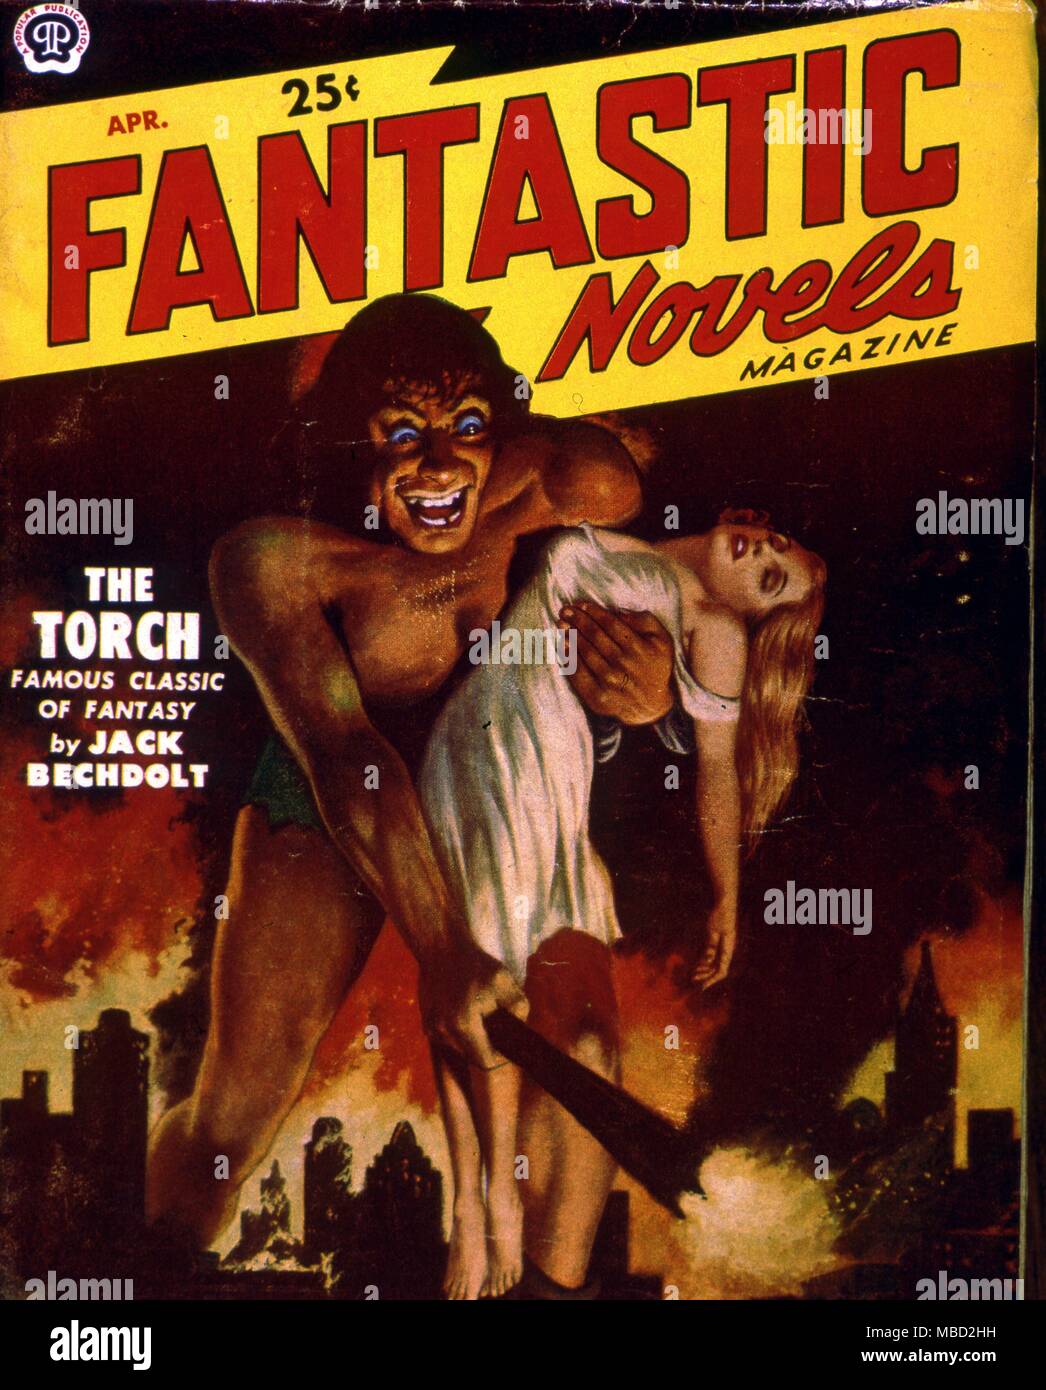 Monstruos. Cubierta de novelas fantásticas, una revista de ciencia ficción americana.1951. Foto de stock